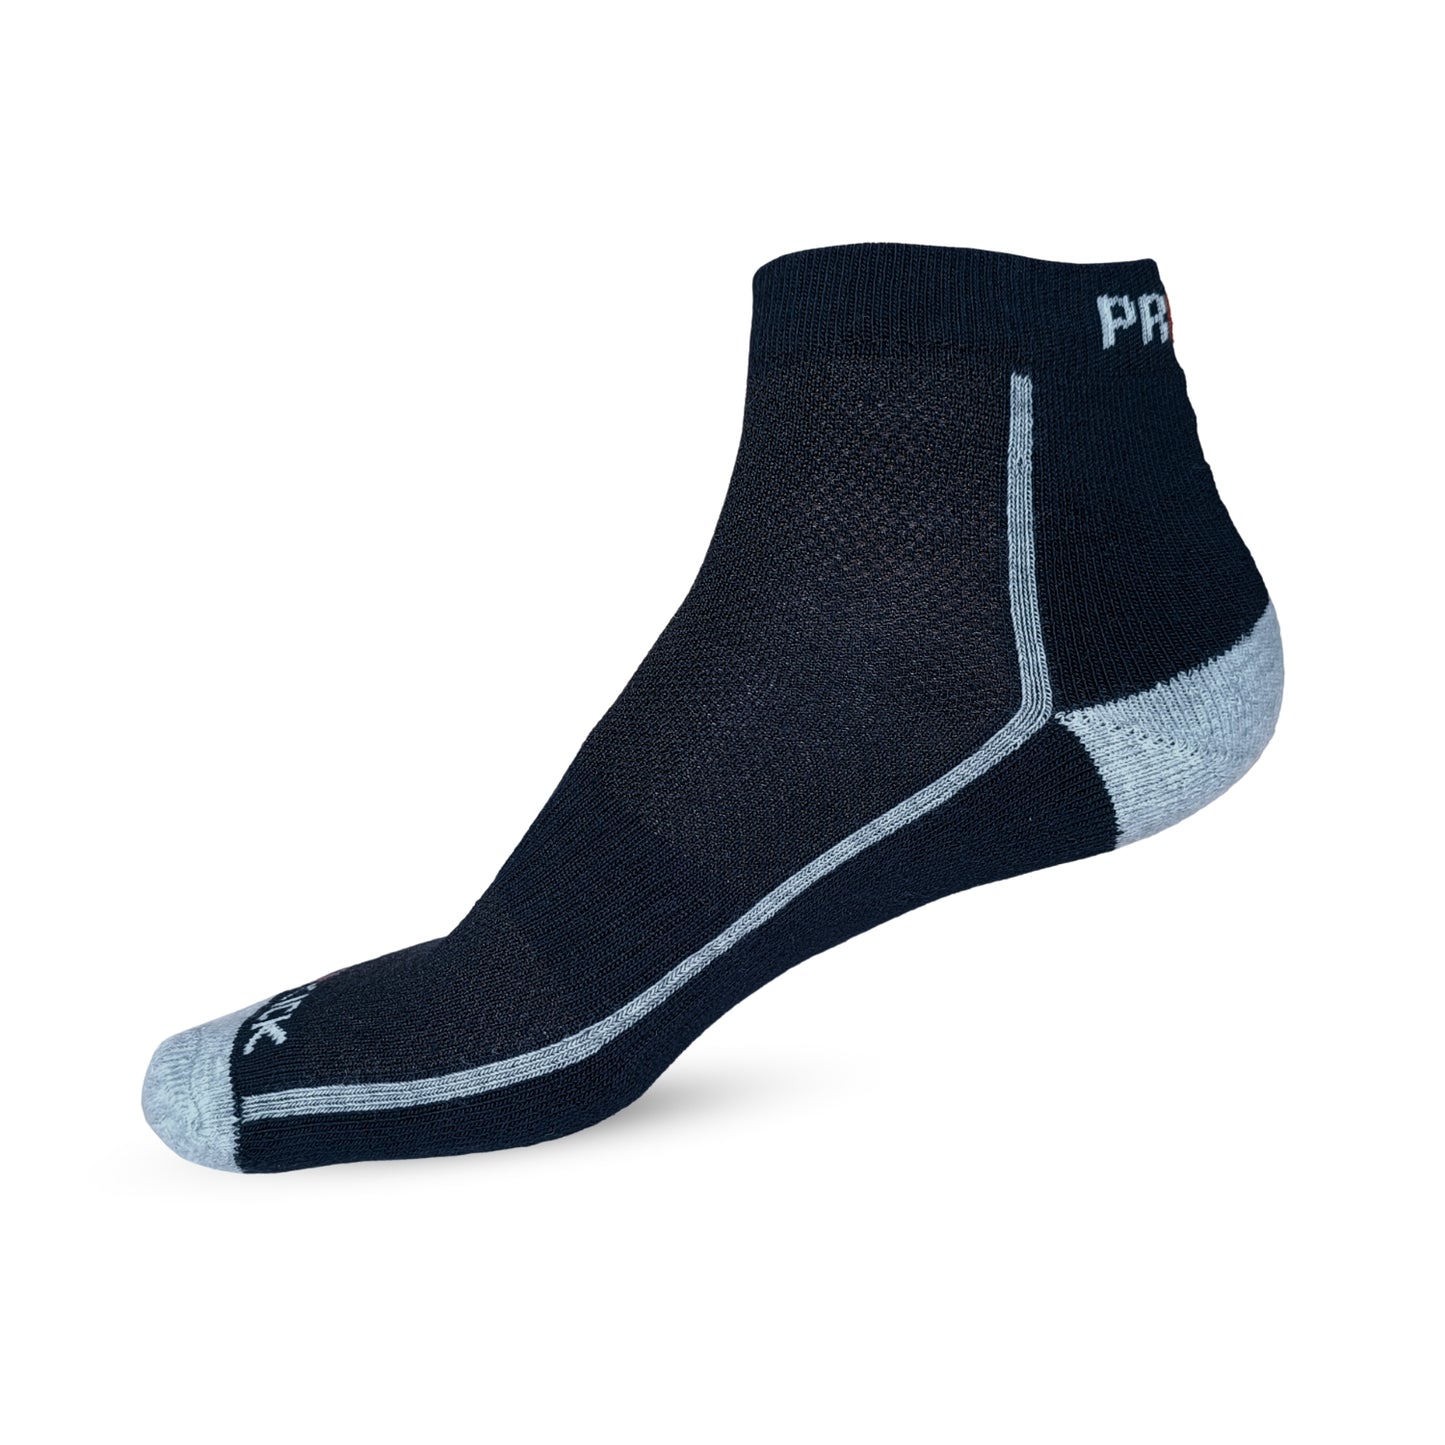 Prokick Ankle Length Socks for Men & Women, Assorted - Pack of 3 - Best Price online Prokicksports.com